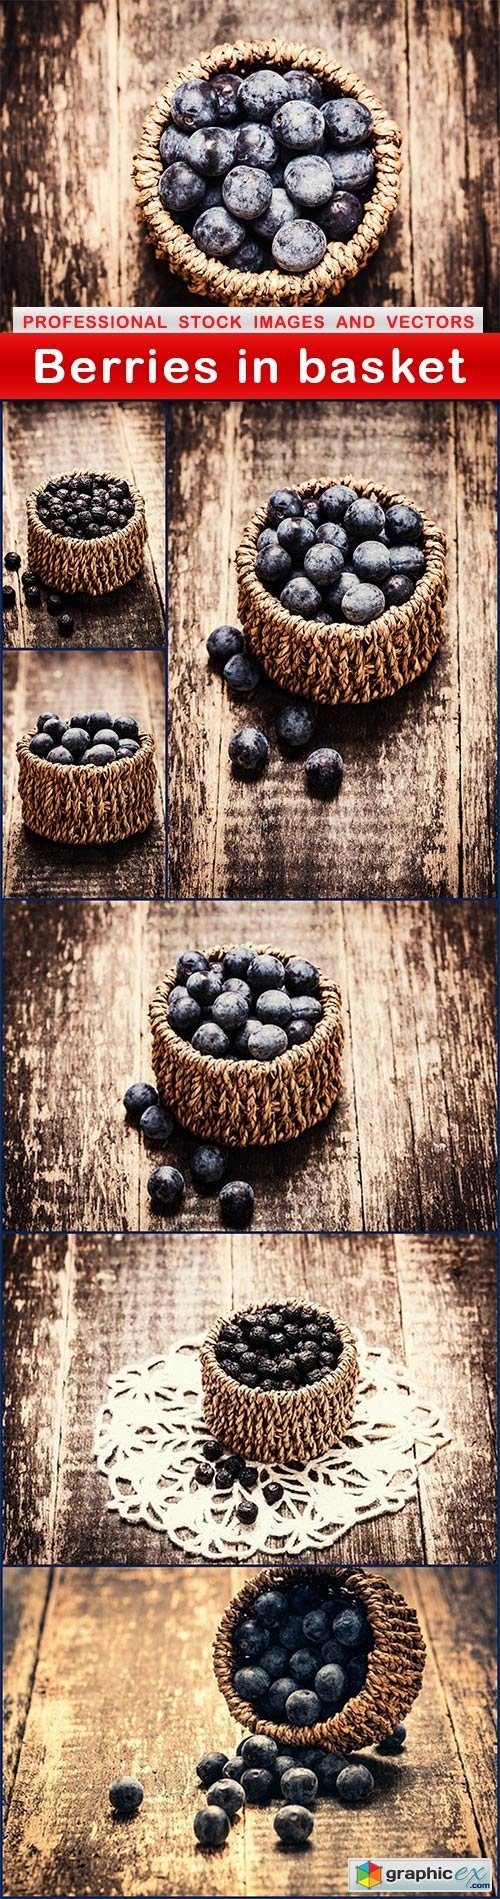 Berries in basket - 7 UHQ JPEG